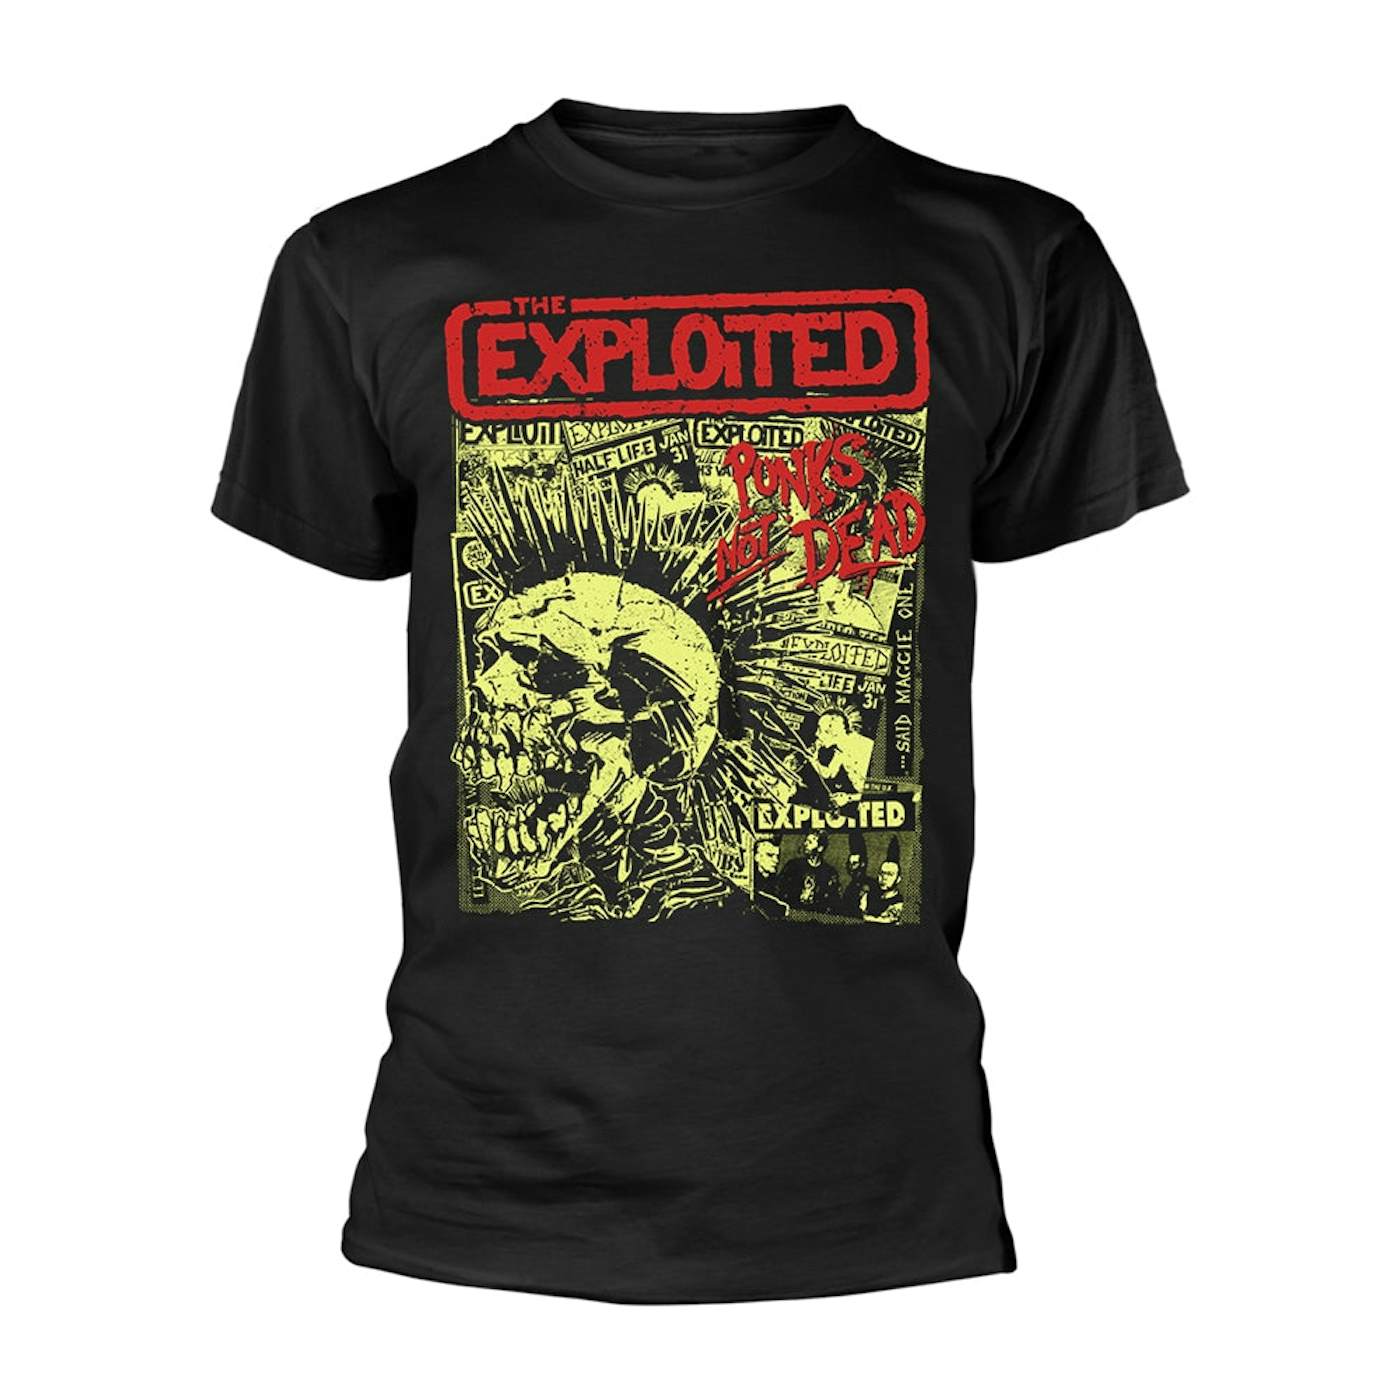 The Exploited T Shirt - Punks Not Dead (Black)